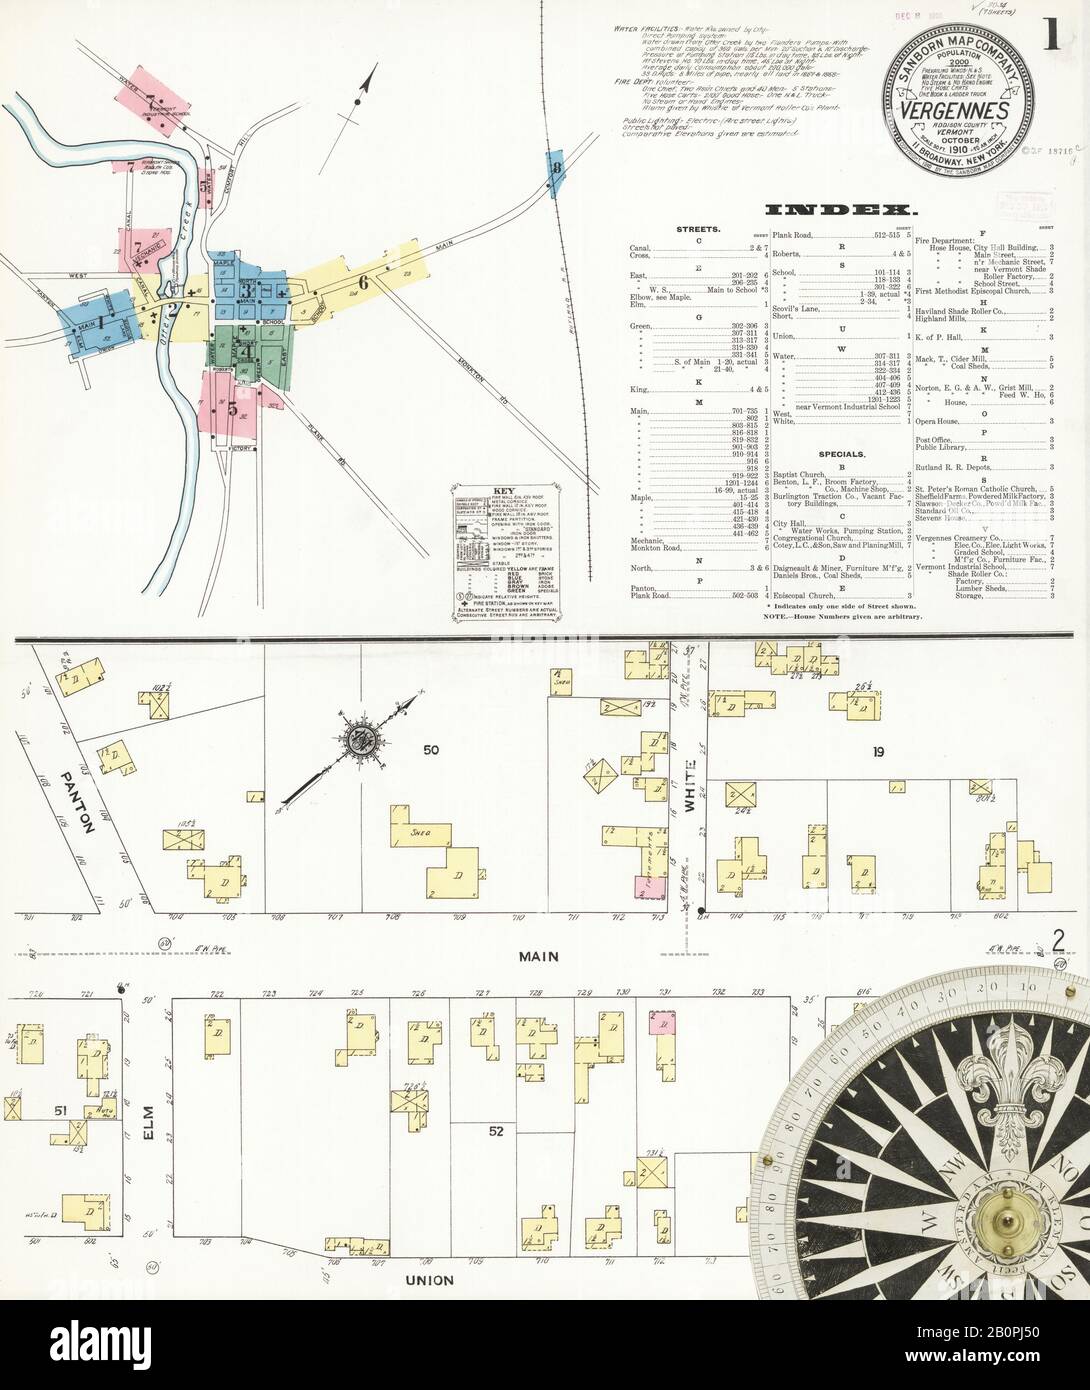 Bild 1 von Sanborn Fire Insurance Map aus Vergennes, Addison County, Vermont. Okt 1910. 7 Blatt(e), Amerika, Straßenkarte mit einem Kompass Aus Dem 19. Jahrhundert Stockfoto